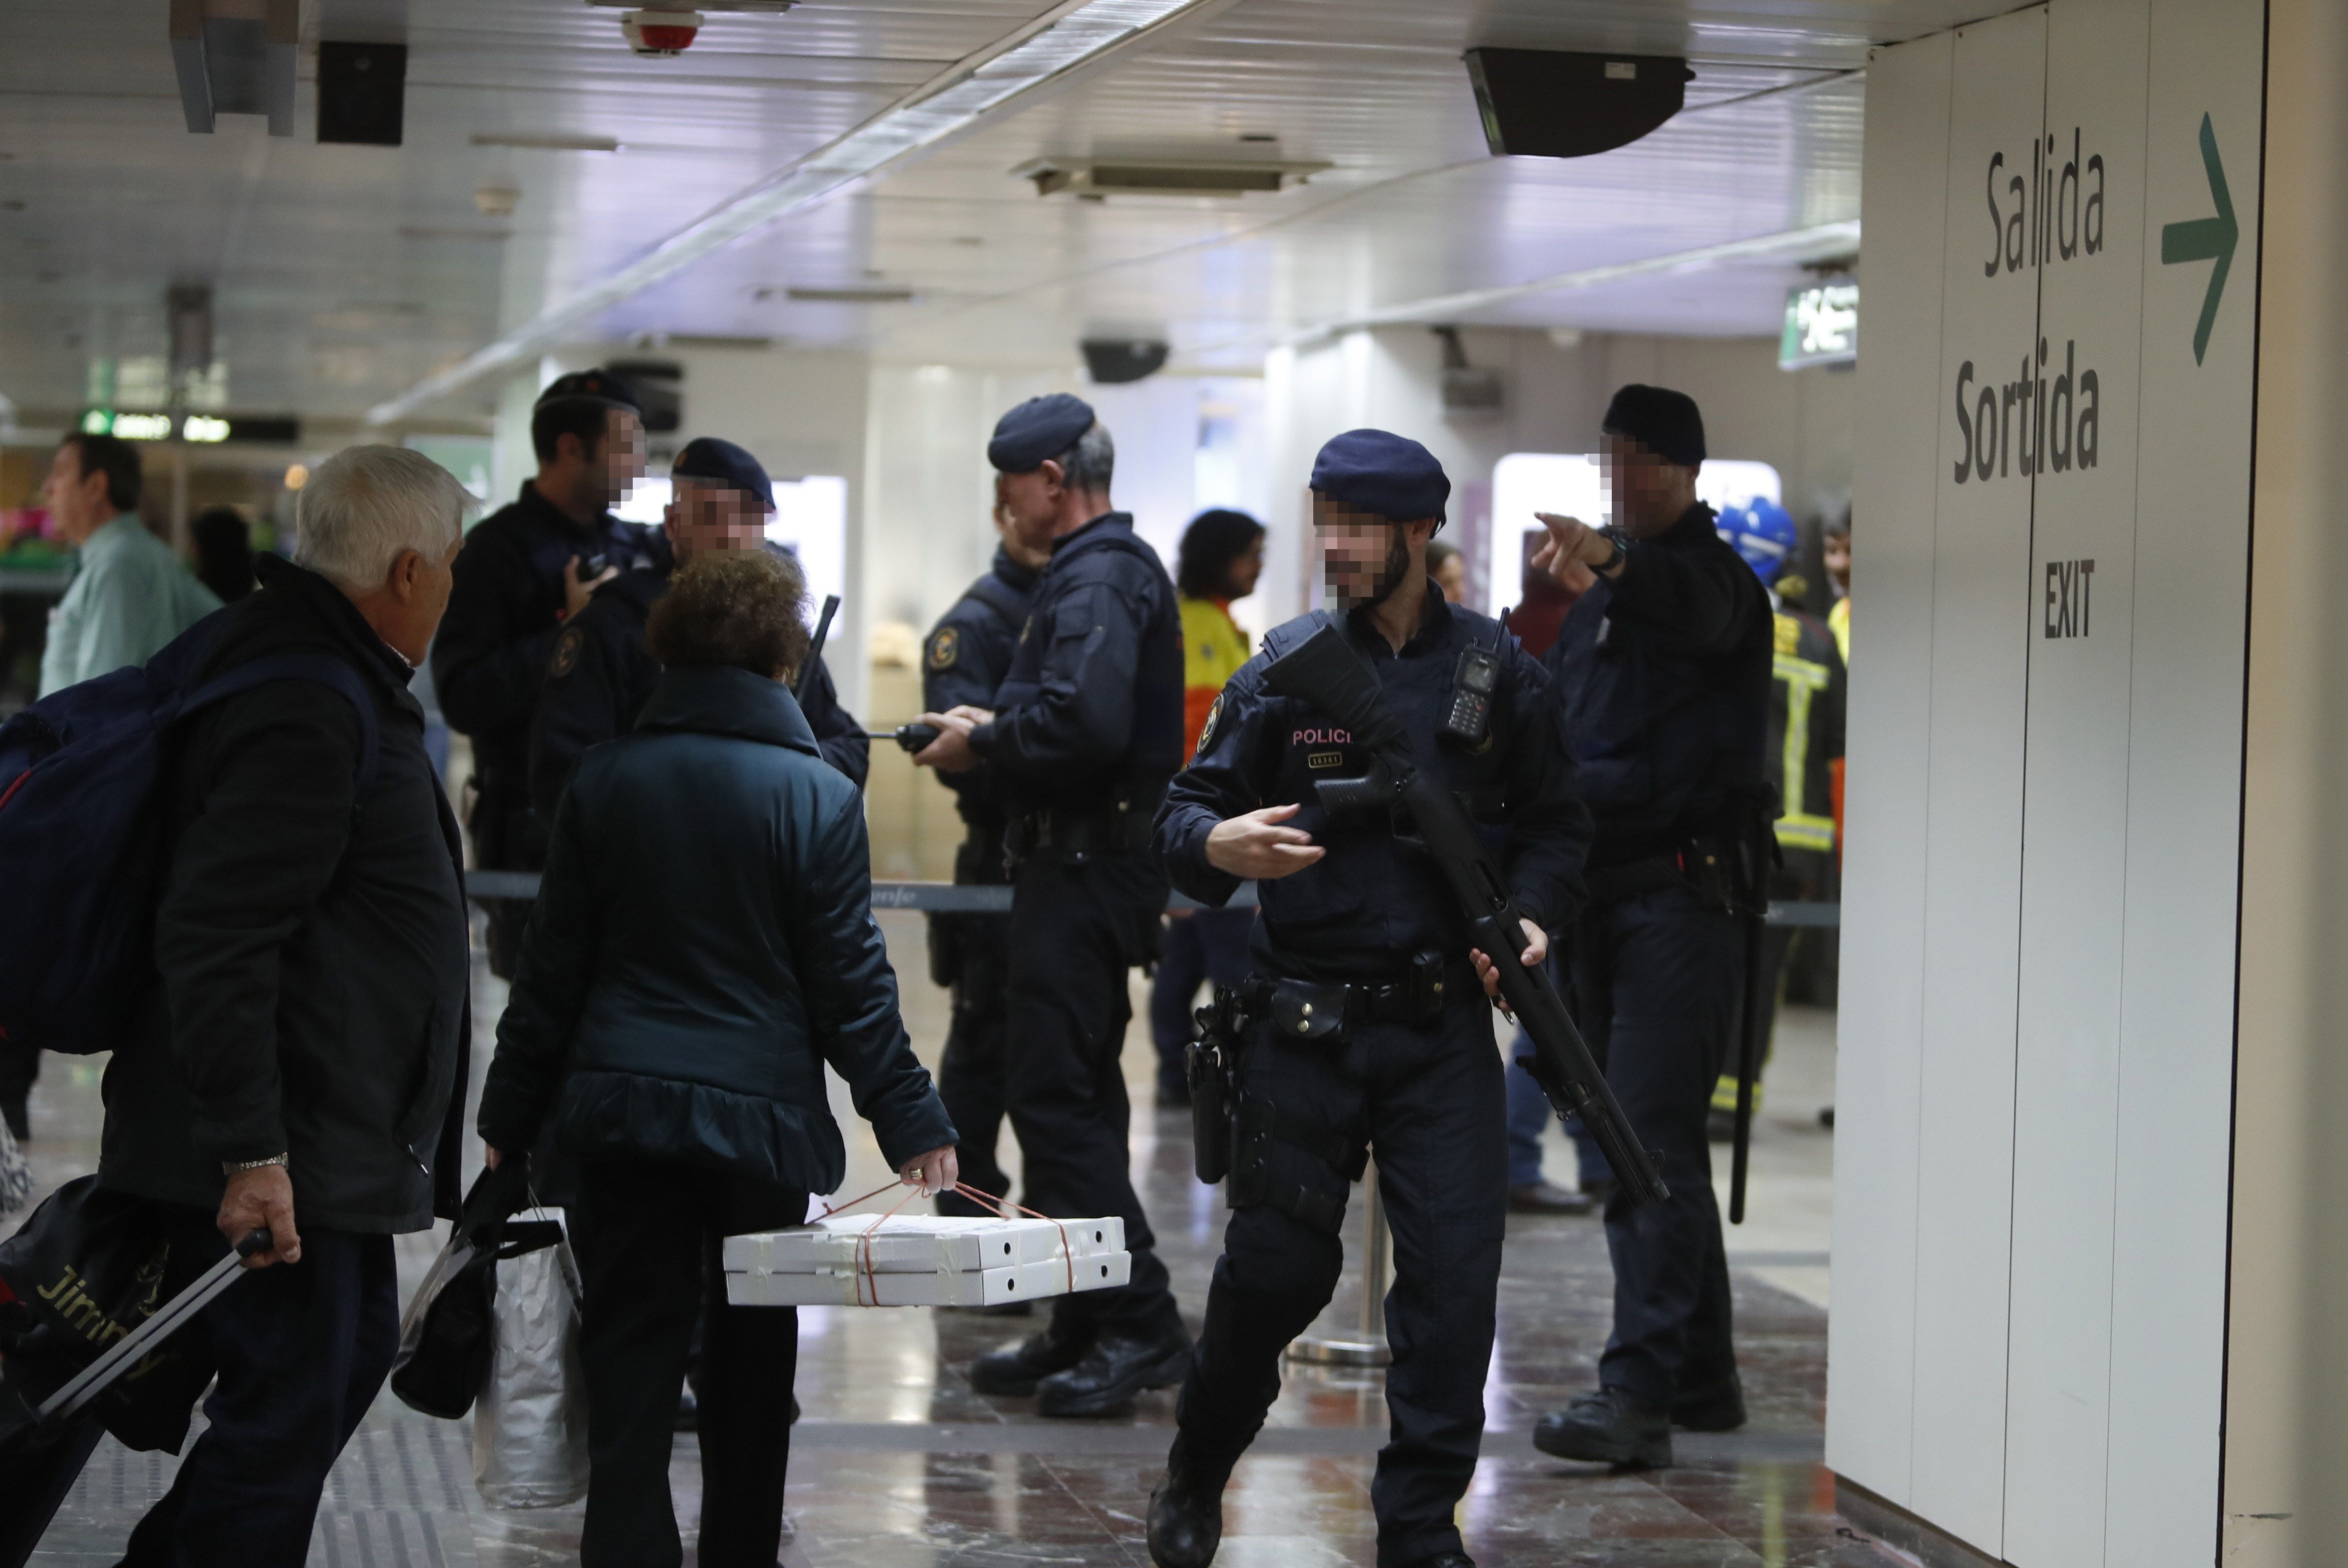 La Policía desaloja la estación ferroviaria de Madrid-Atocha